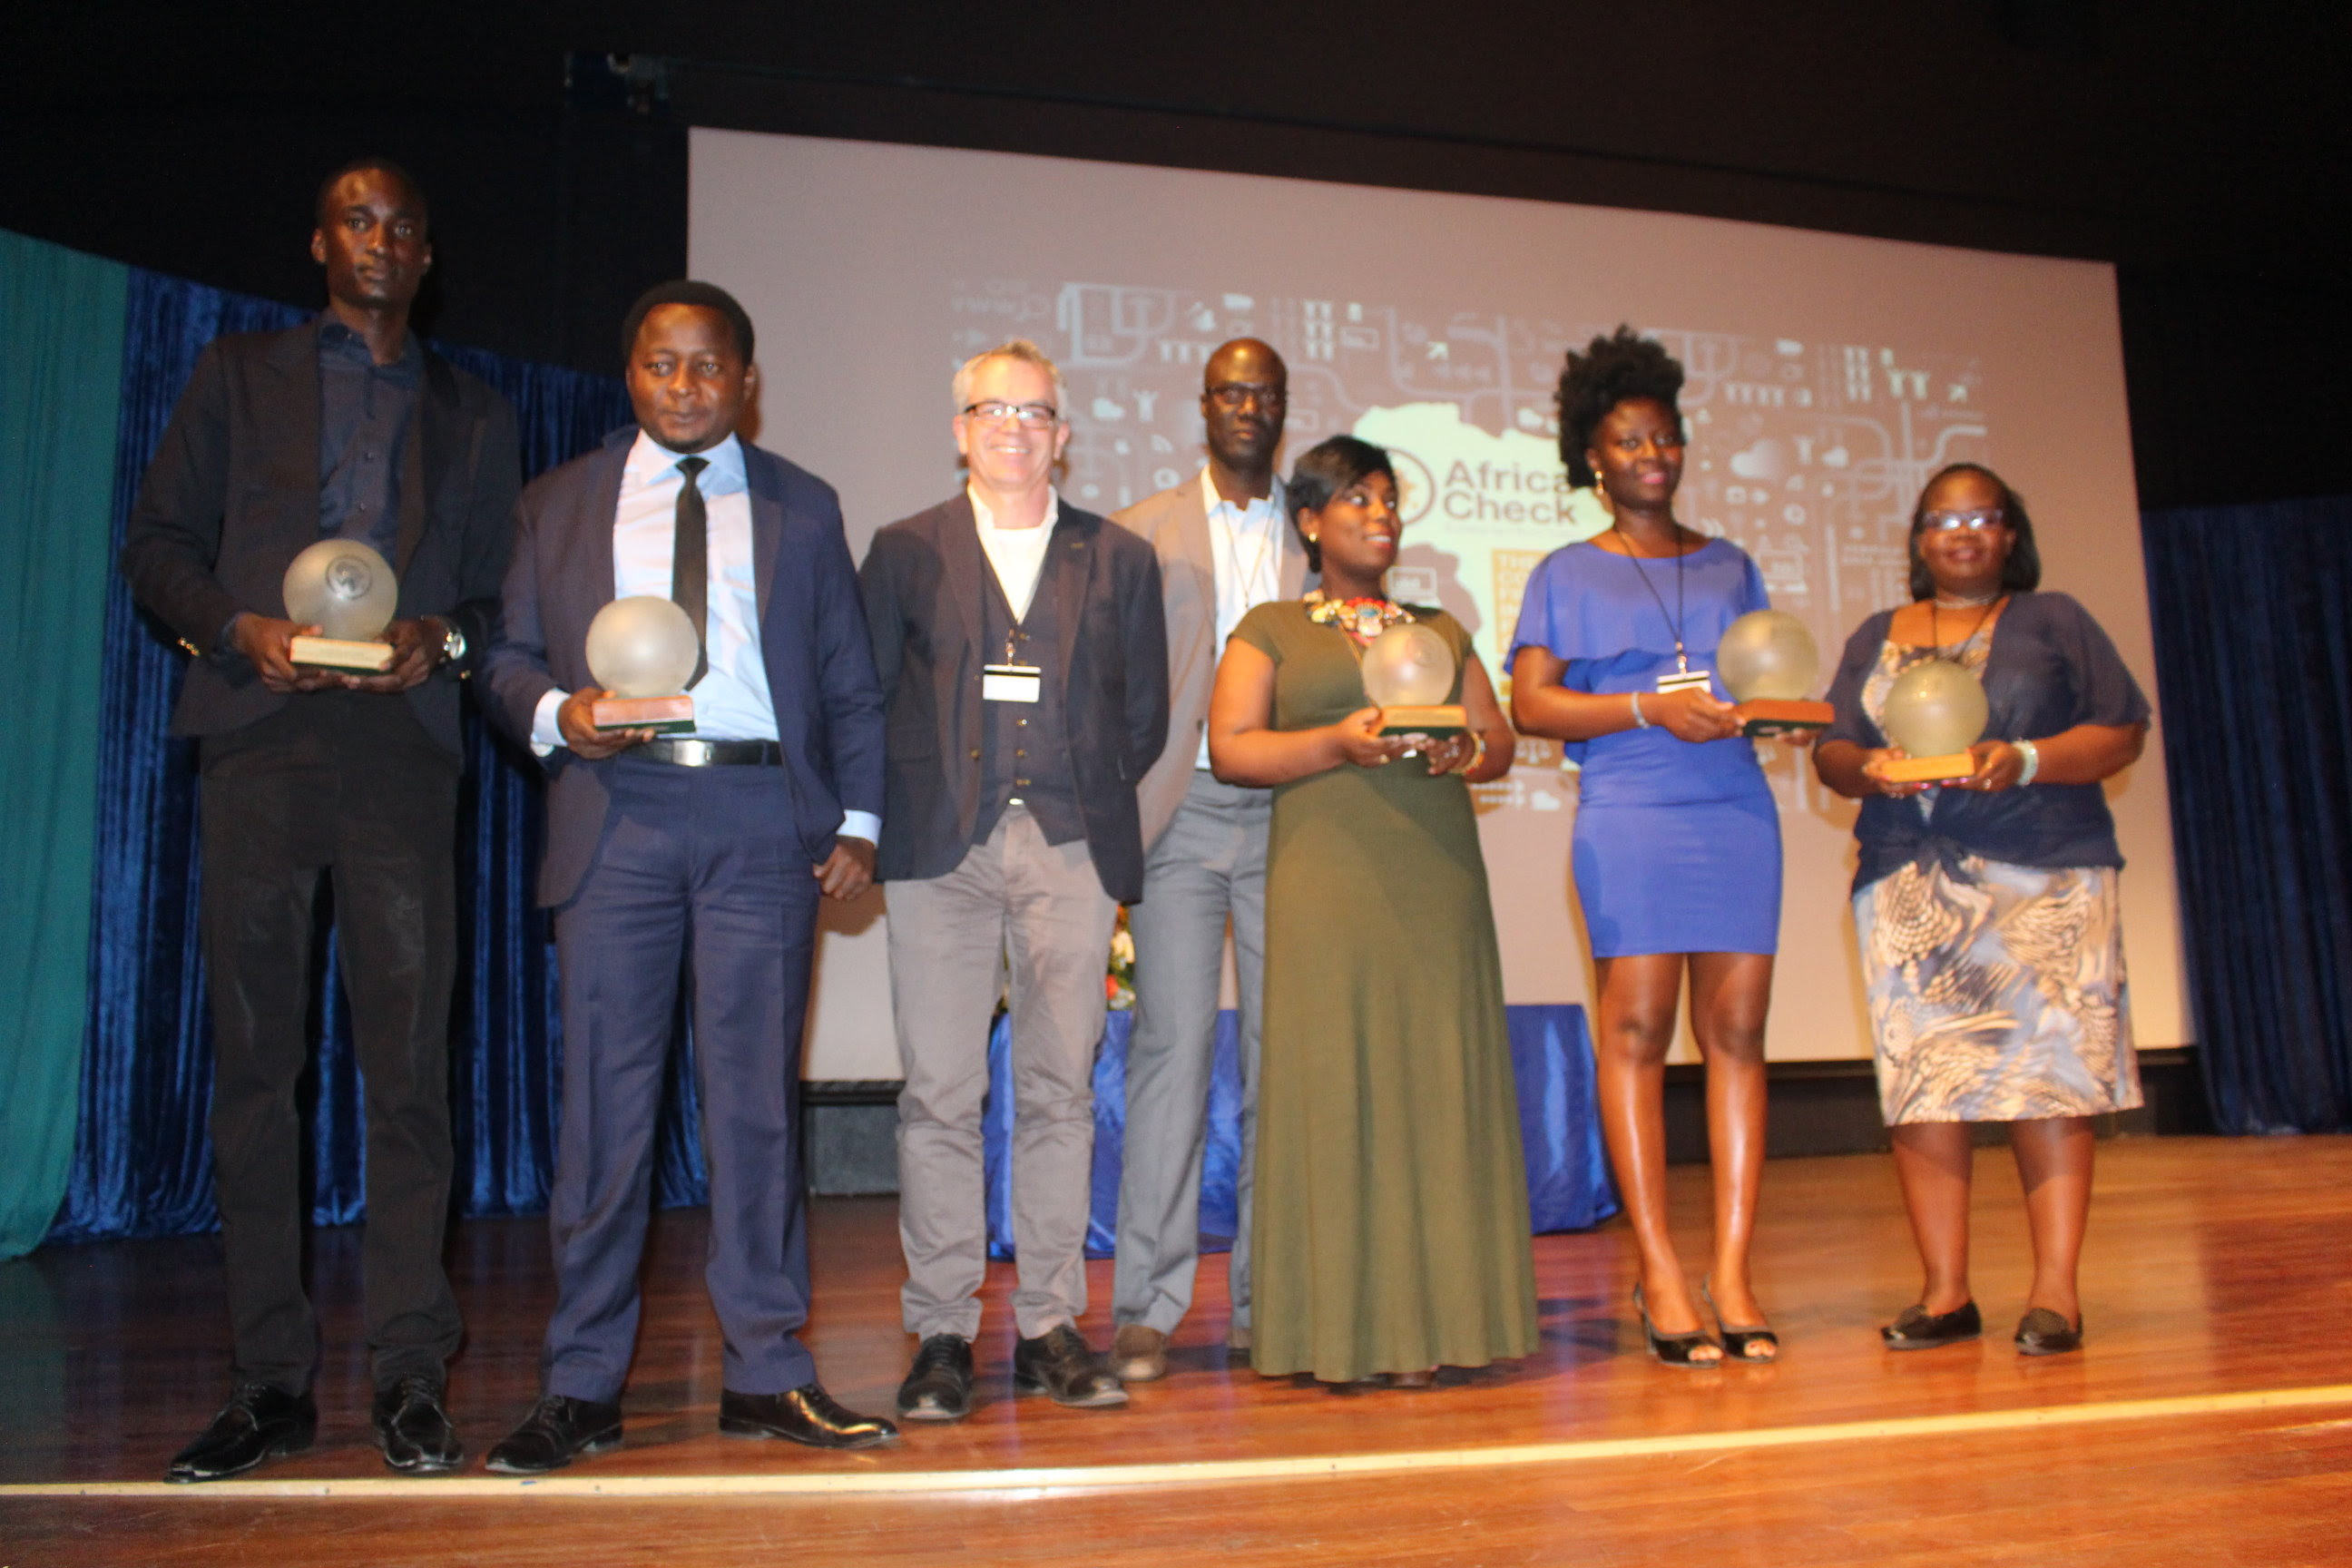 Prix africains de fact-checking 2017 : les lauréats récompensés à Johannesburg